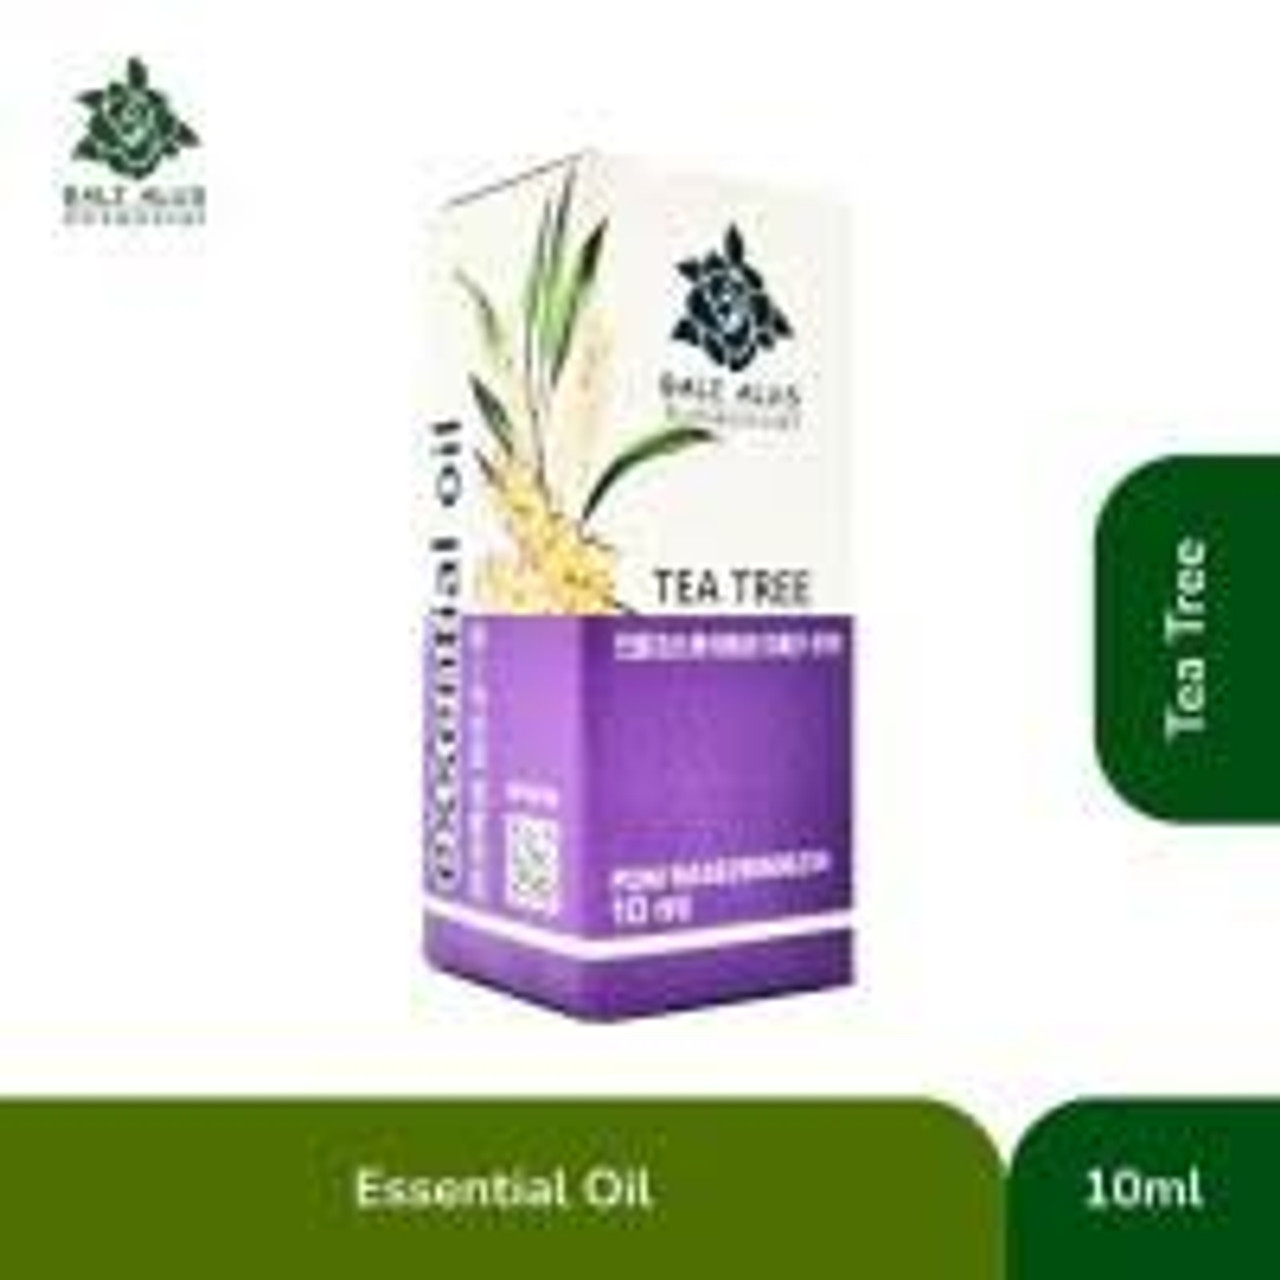 Bali Alus Essential Oil Tea Tree, 10ml